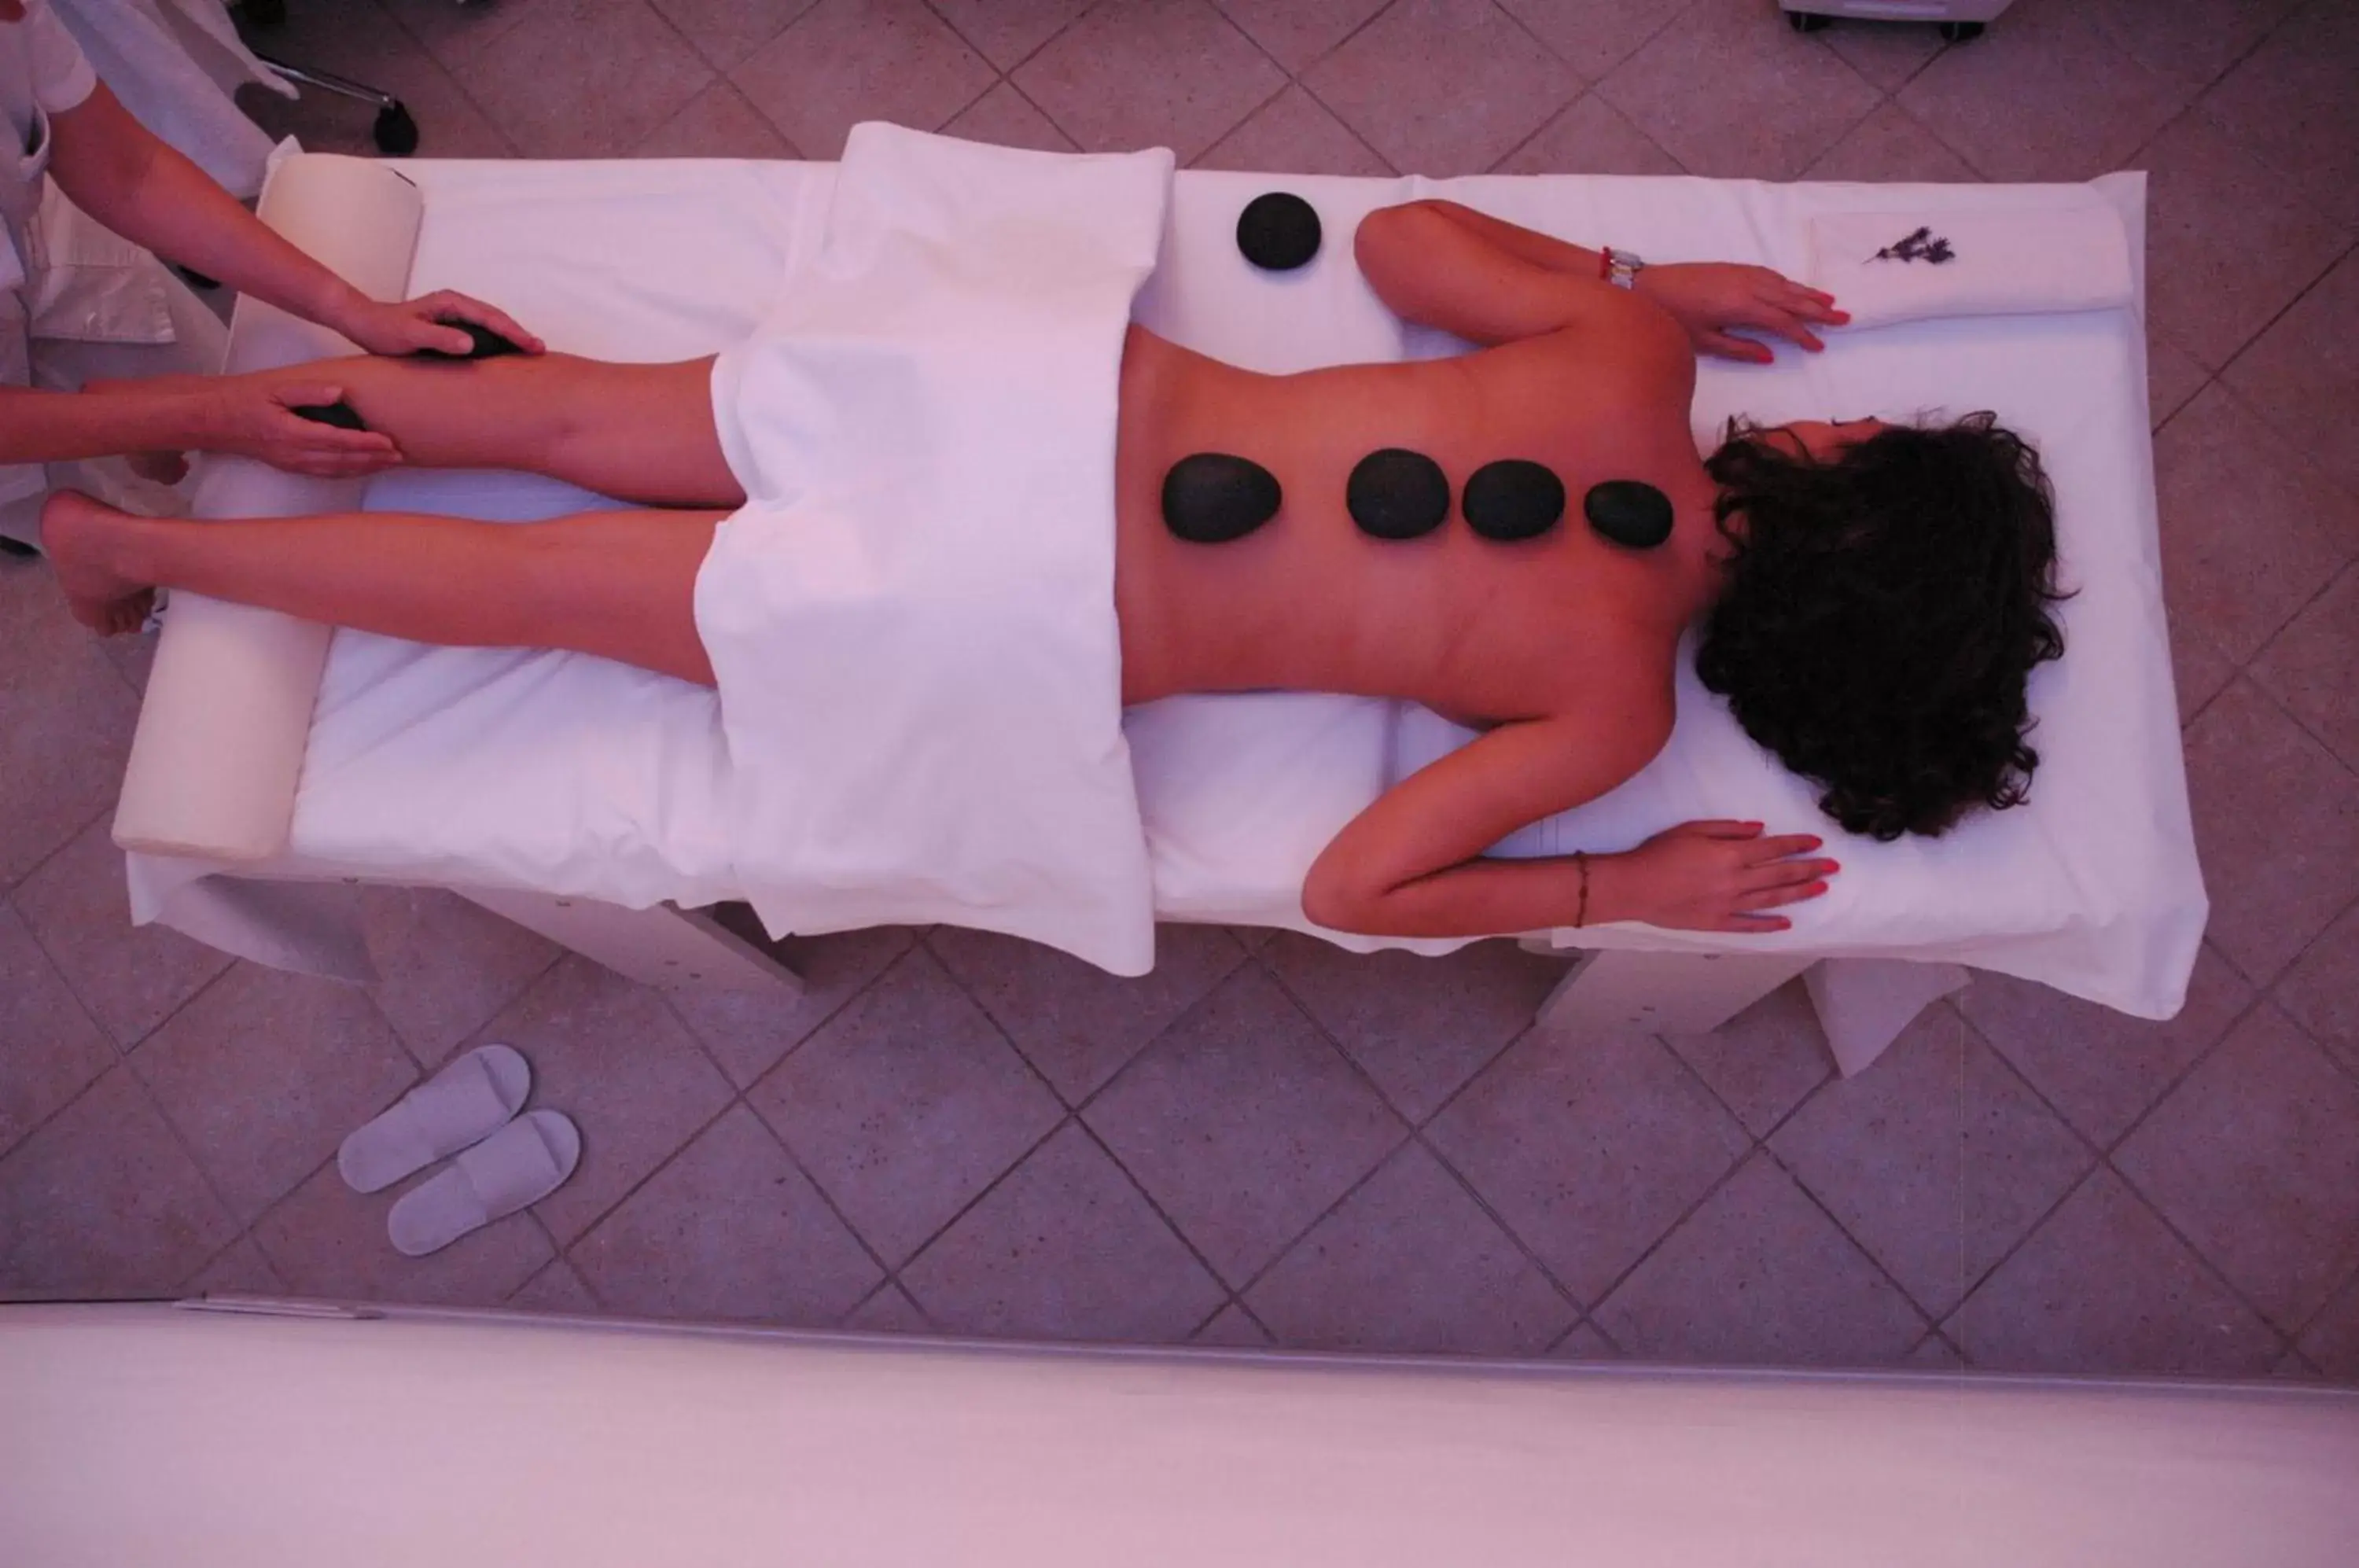 Massage in Hotel Rutiliano